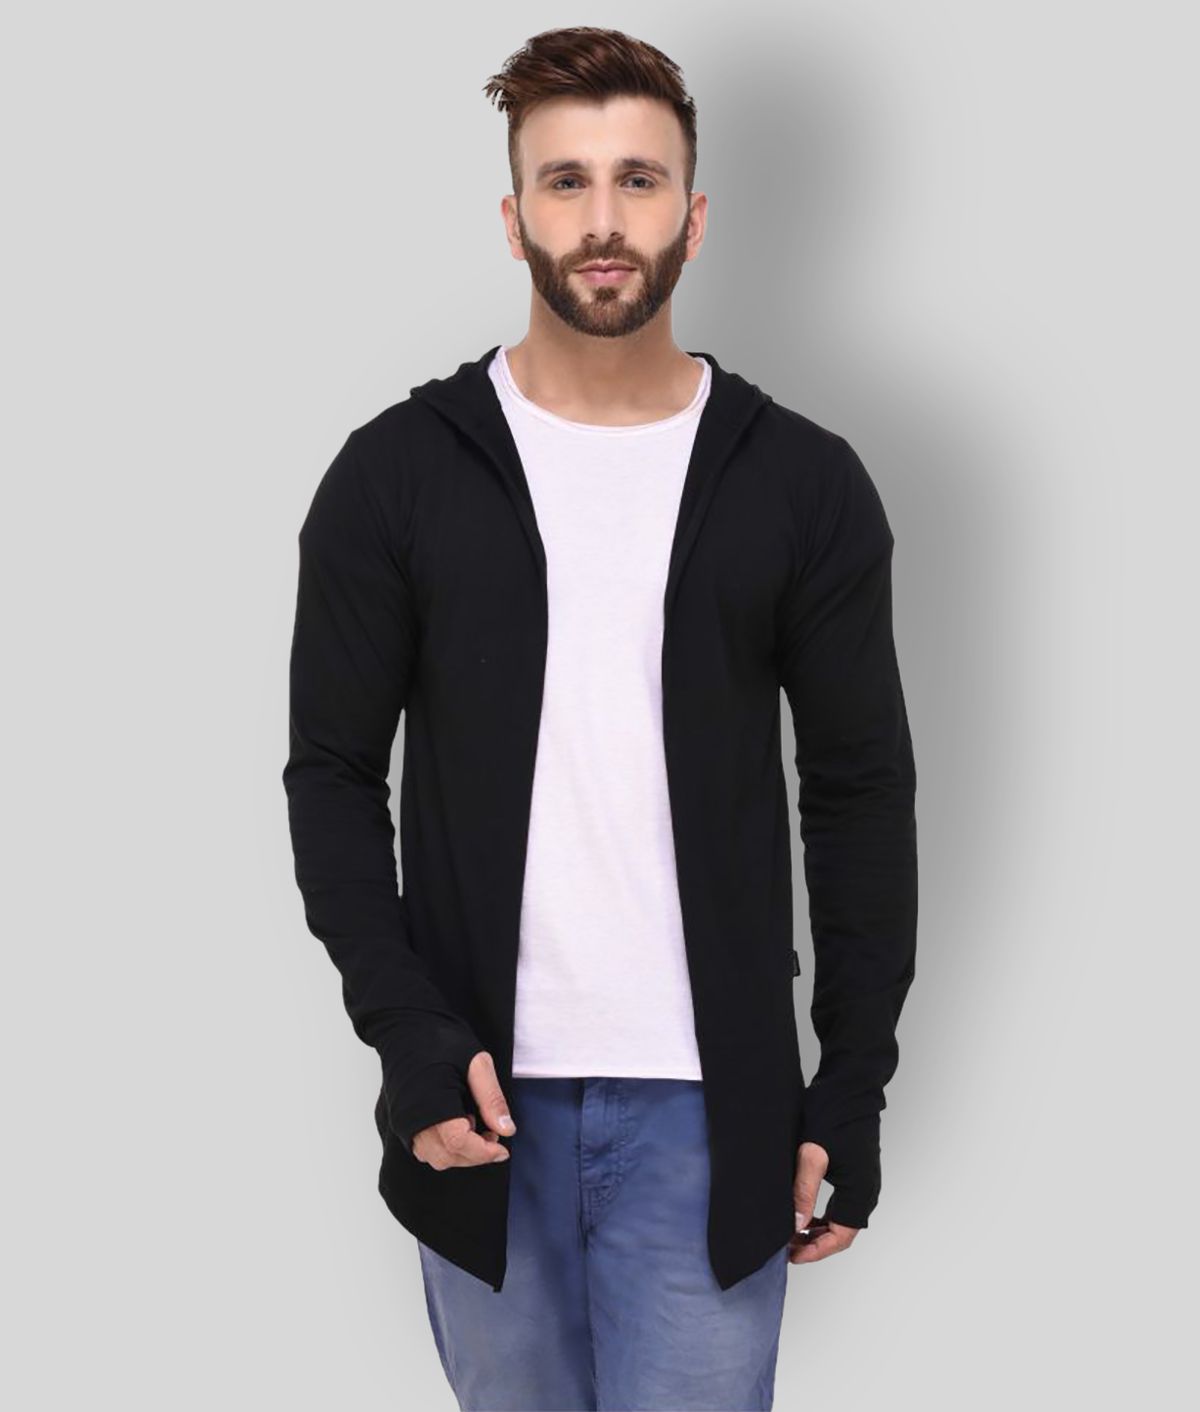     			Rigo - Black Cotton Men's Cardigans Sweater ( Pack of 1 )